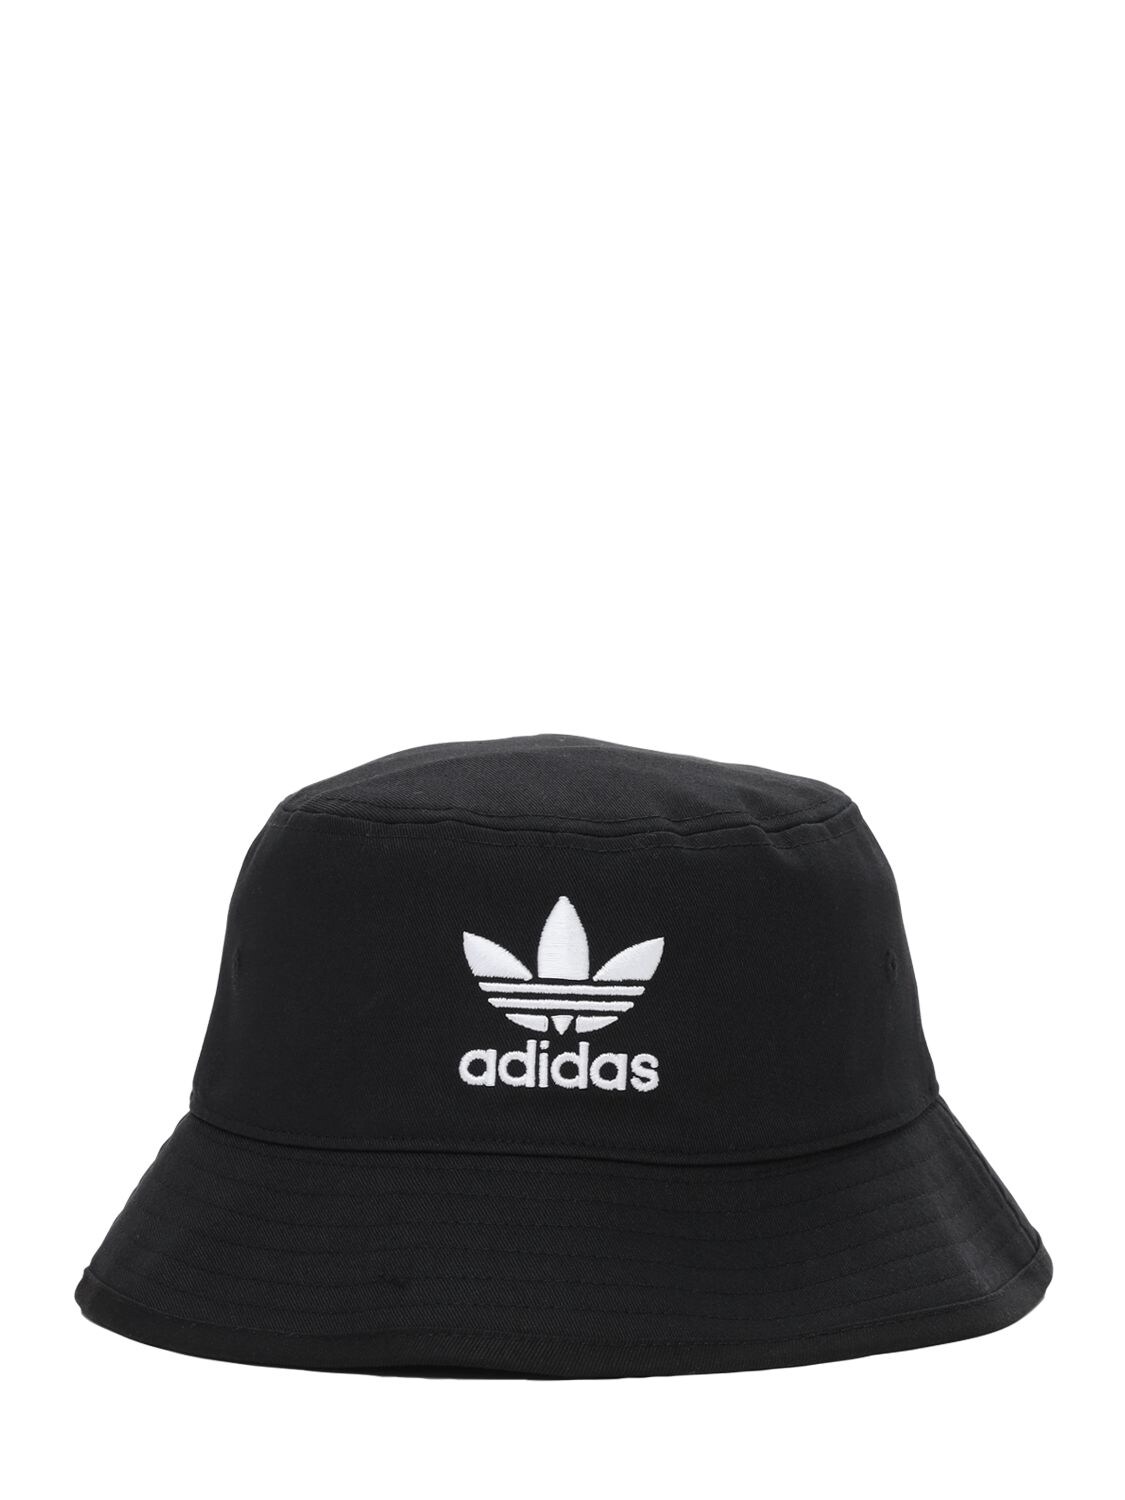 Adidas Originals Logo Bucket Hat In Black